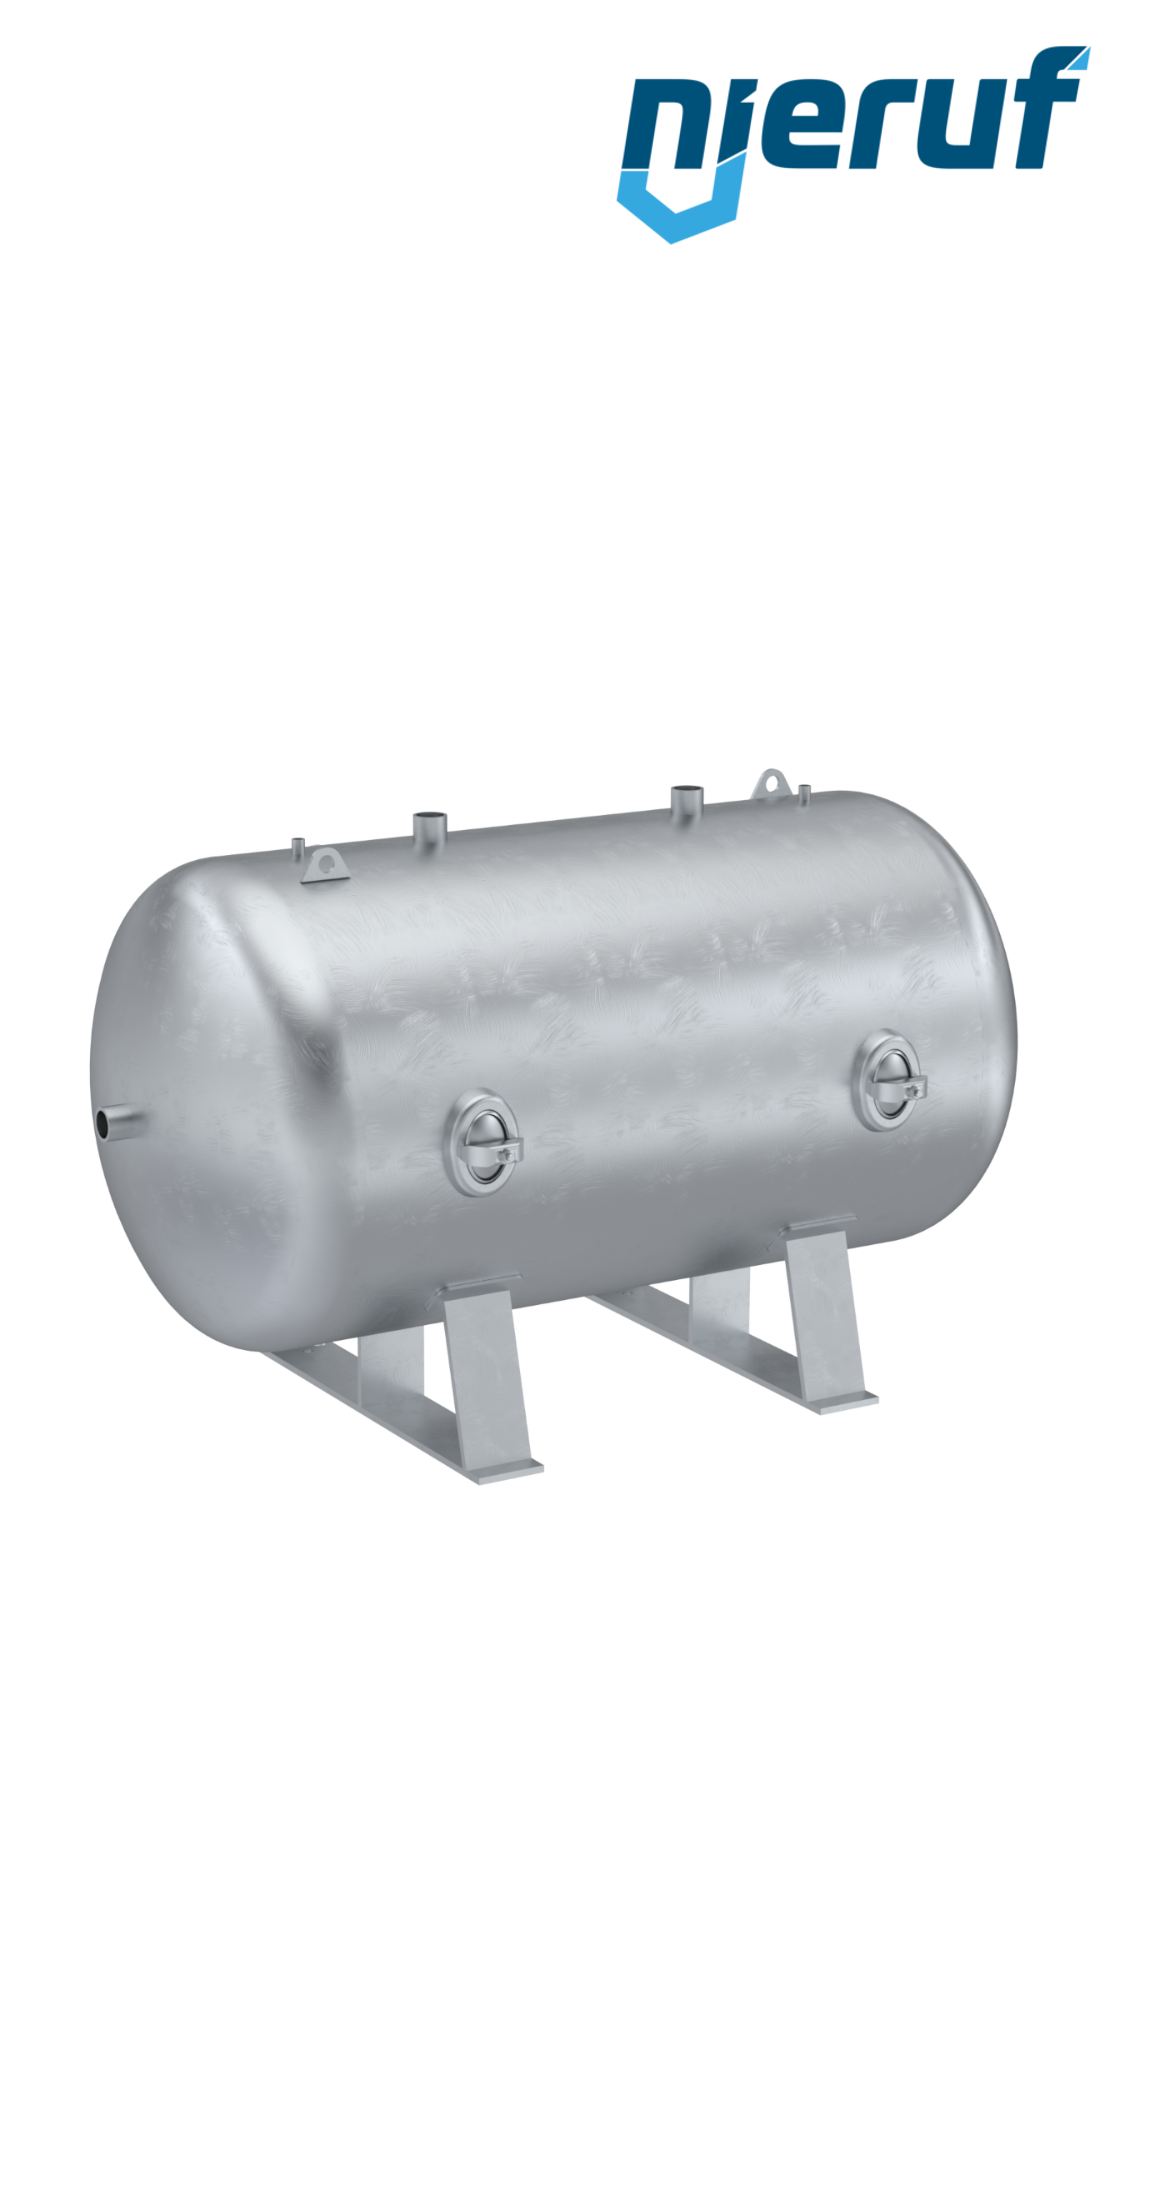 Serbatoi per alta pressione orizzontale BE02 1500 litri, 0-26 bar, acciaio zincato